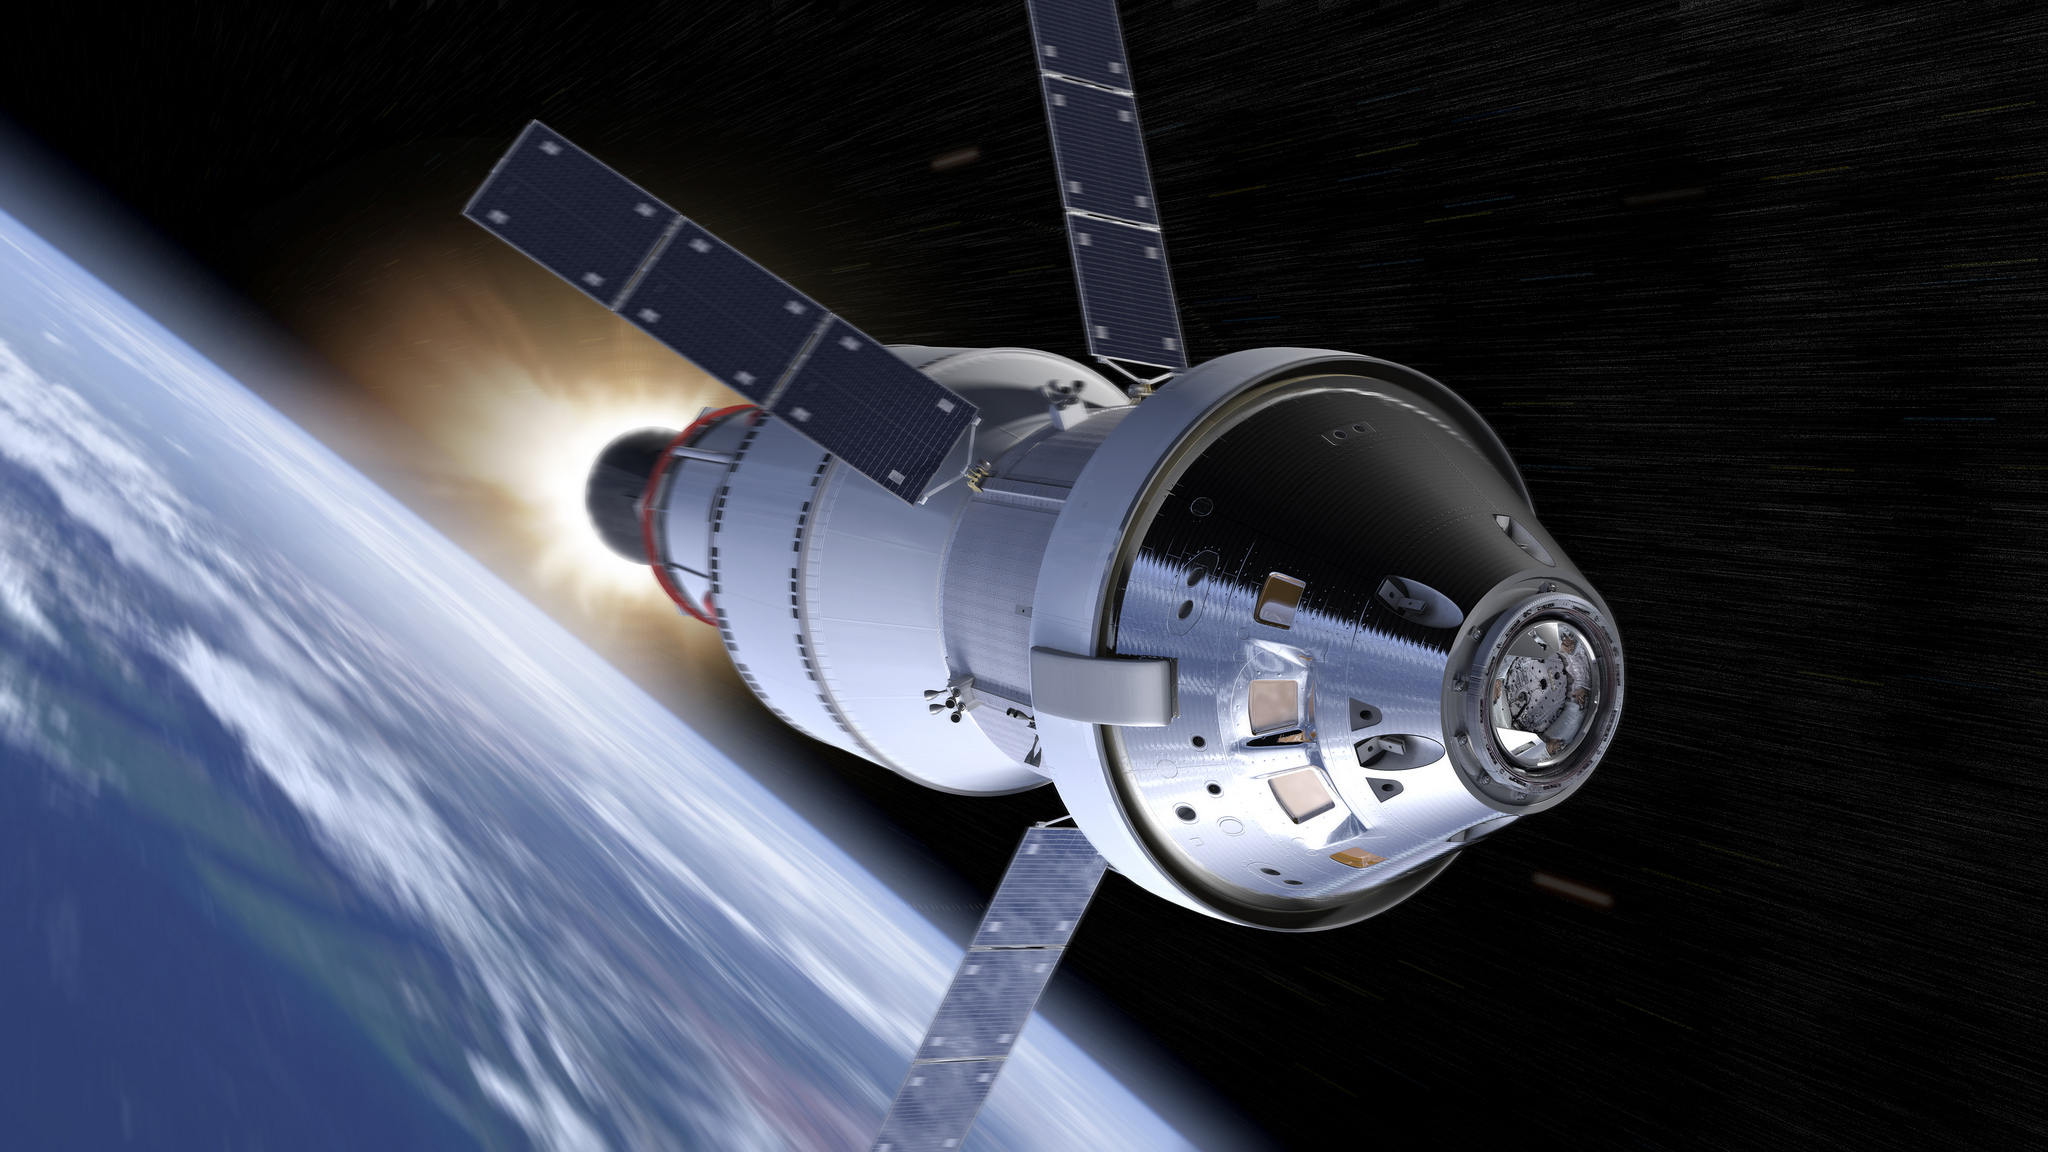 Έτοιμο το κατώτερο μέρος του Orion της NASA που θα ταξιδέψει σε Σελήνη και Άρη